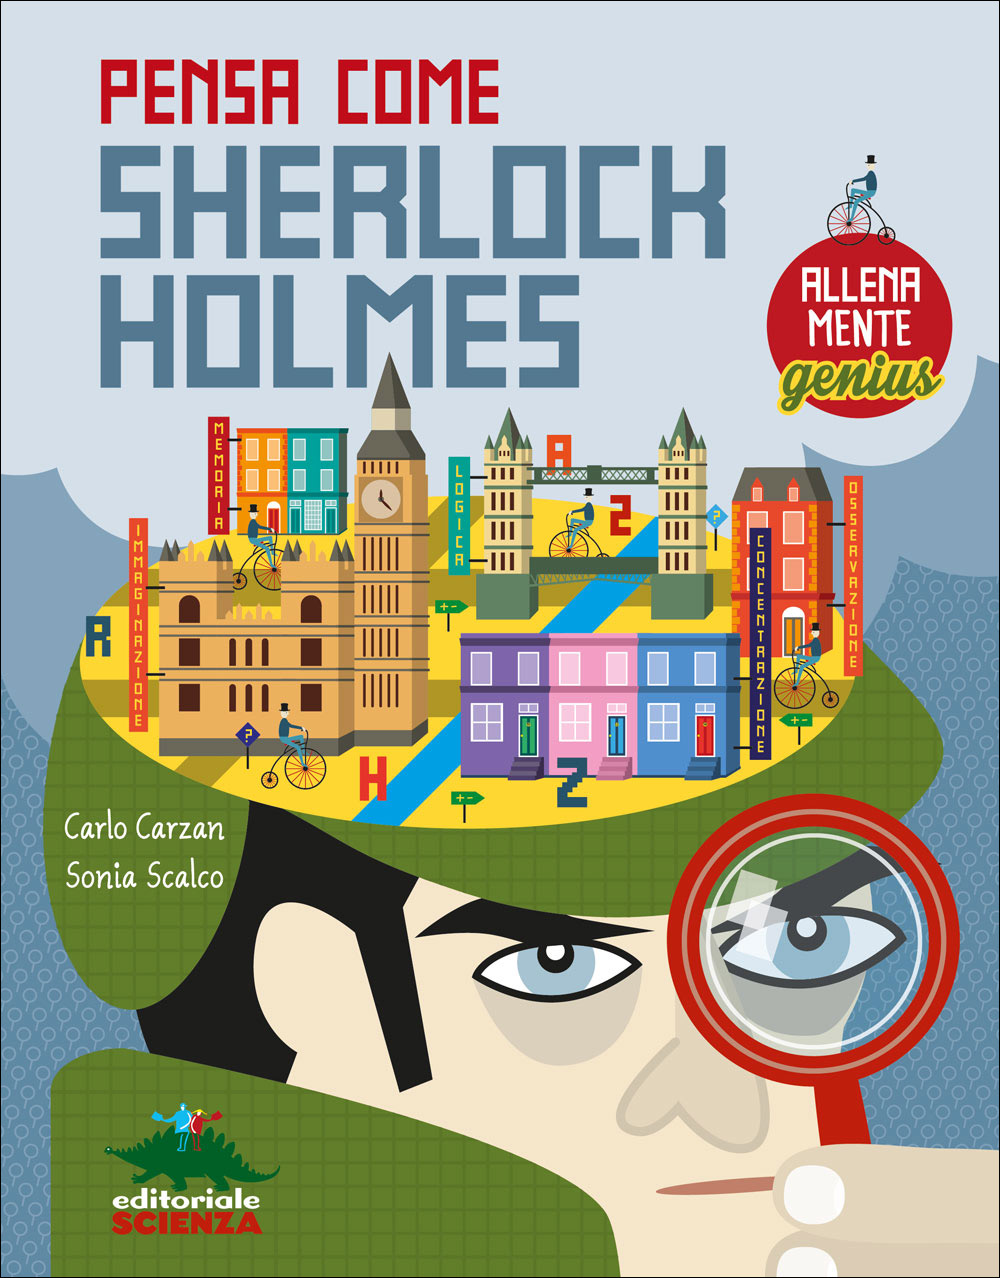 Allenamente Genius - Pensa come Sherlock Holmes